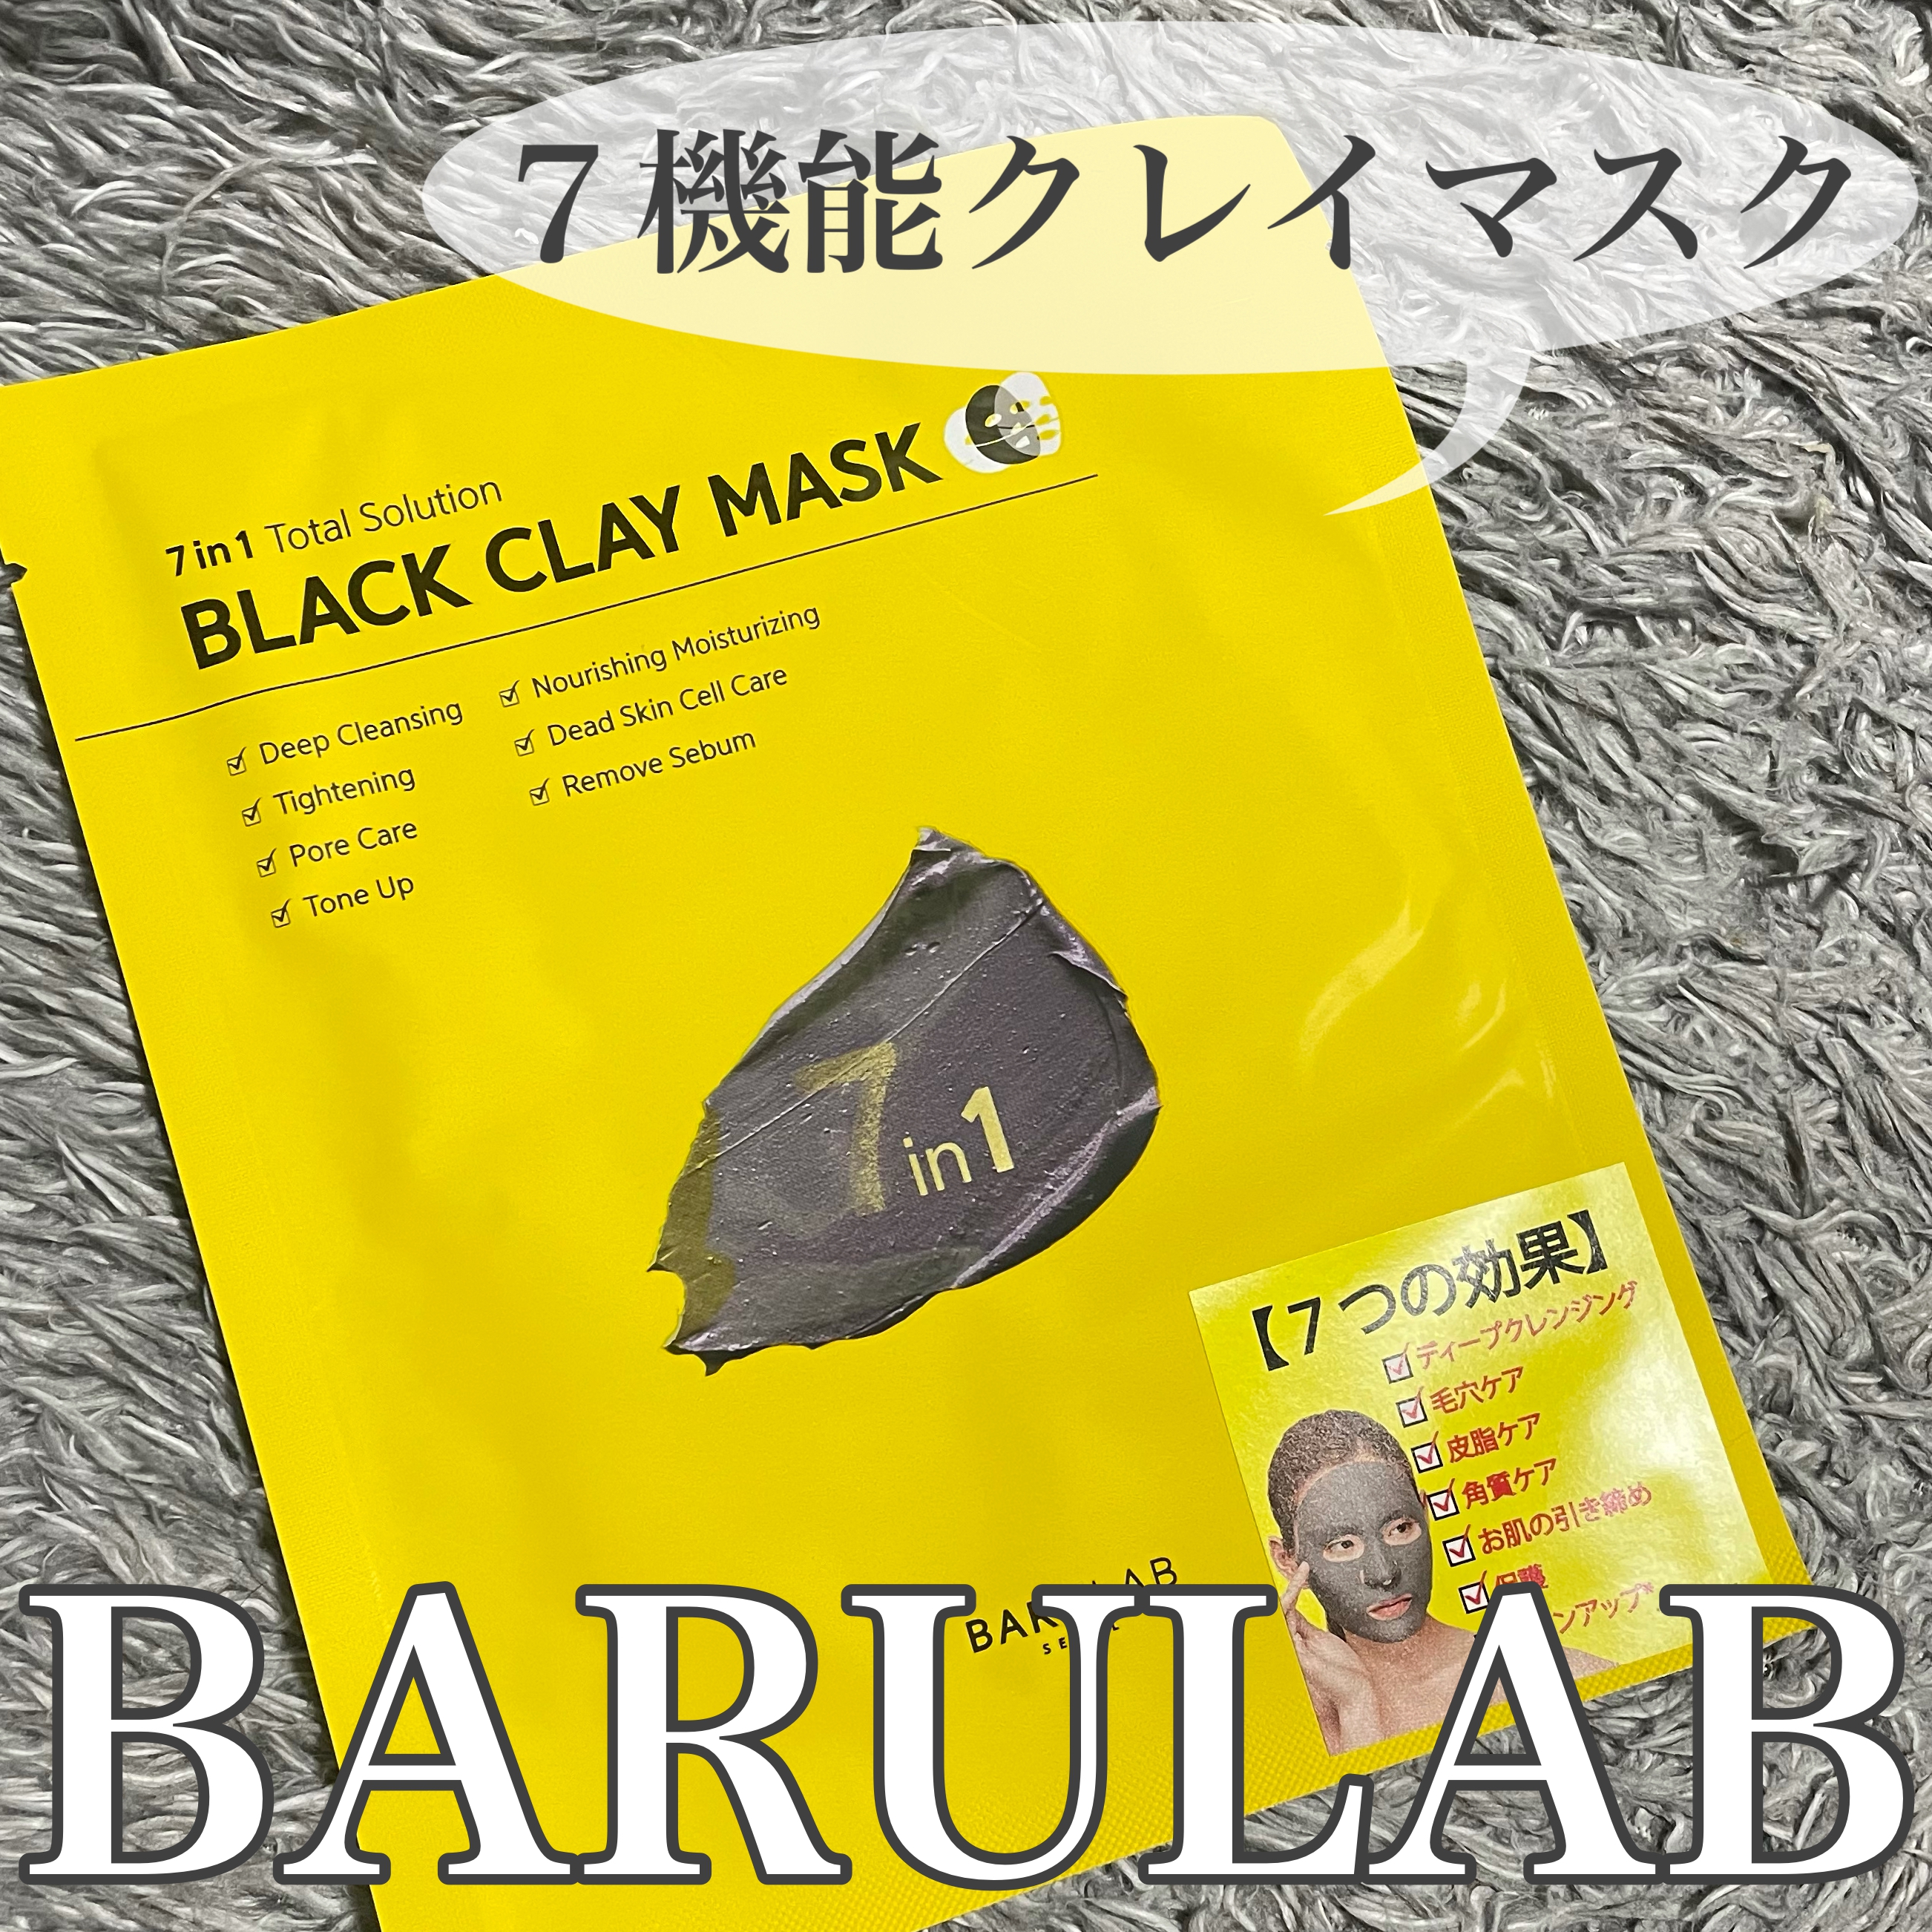 BARULAB(バルラボ) ブラック クレイ マスクの良い点・メリットに関するけいさんの口コミ画像1